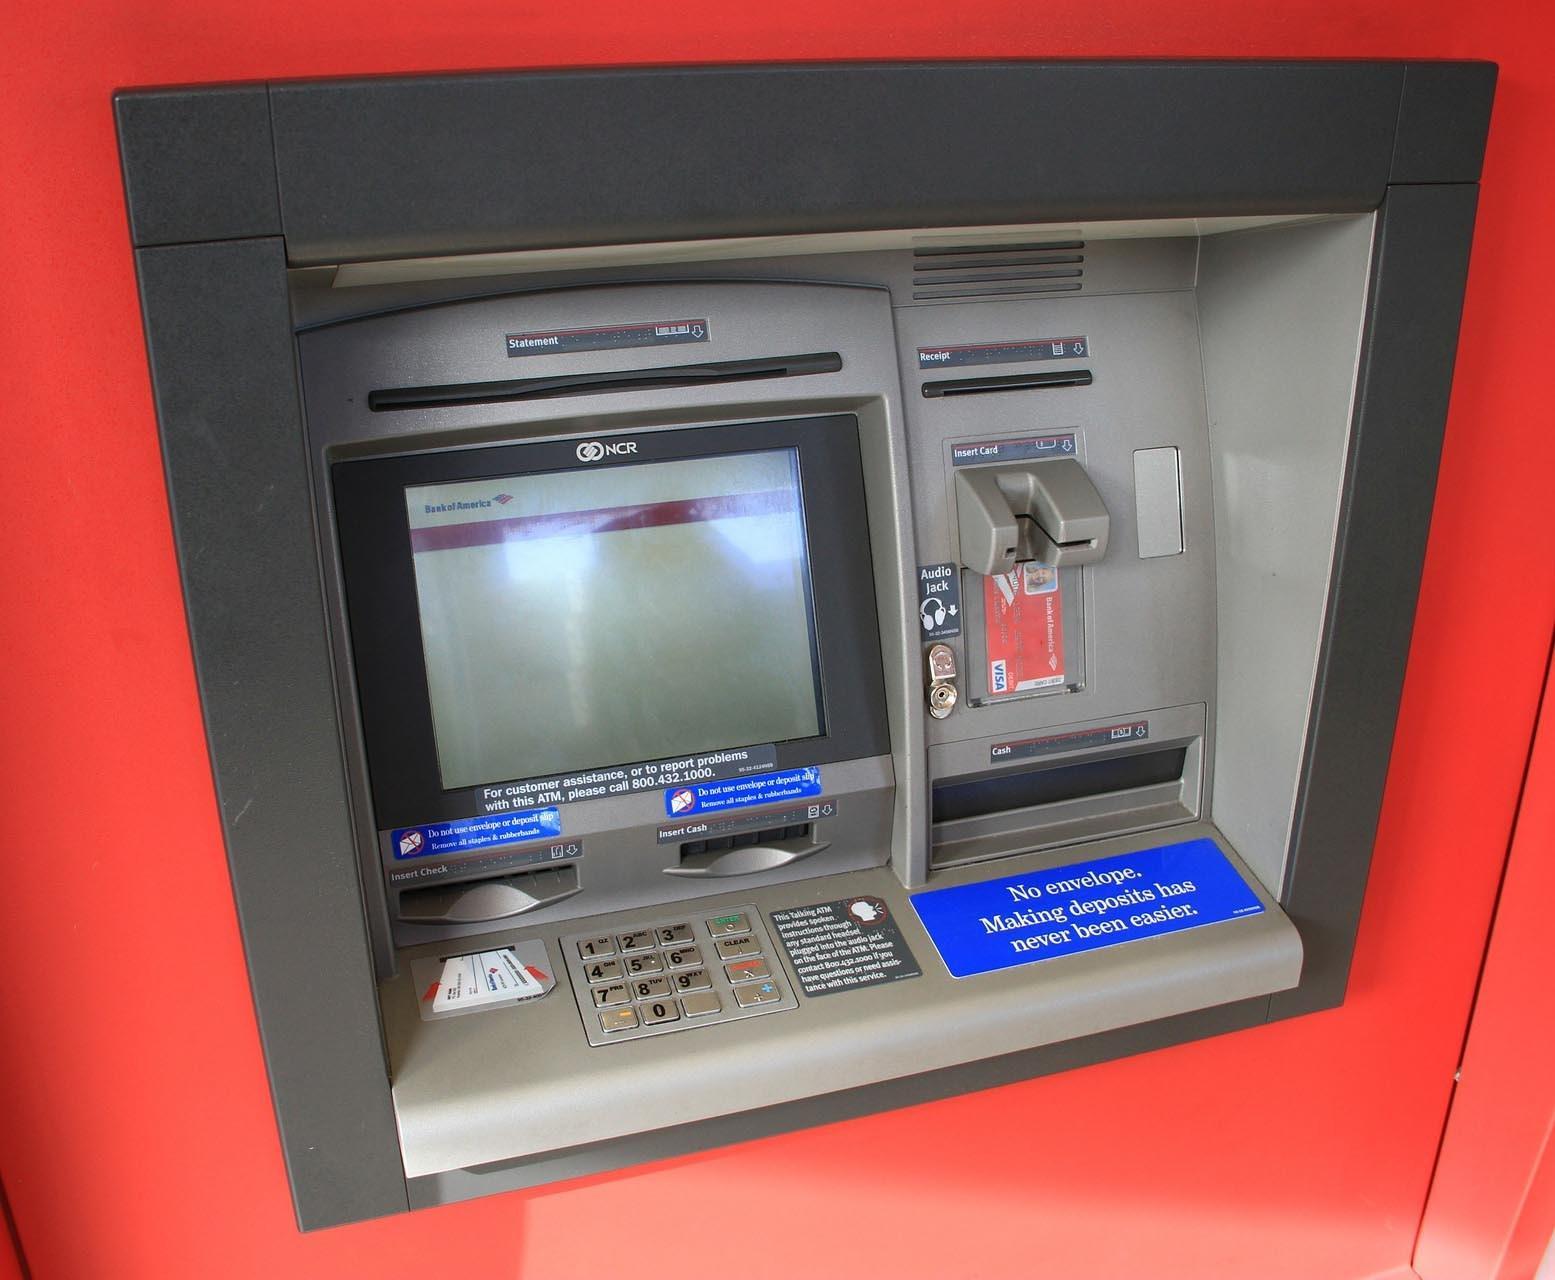 यहां  ATM में कैश डालने गए दो लोग लाखों रुपये लेकर हुए फरार, पुलिस तलाश में जुटी